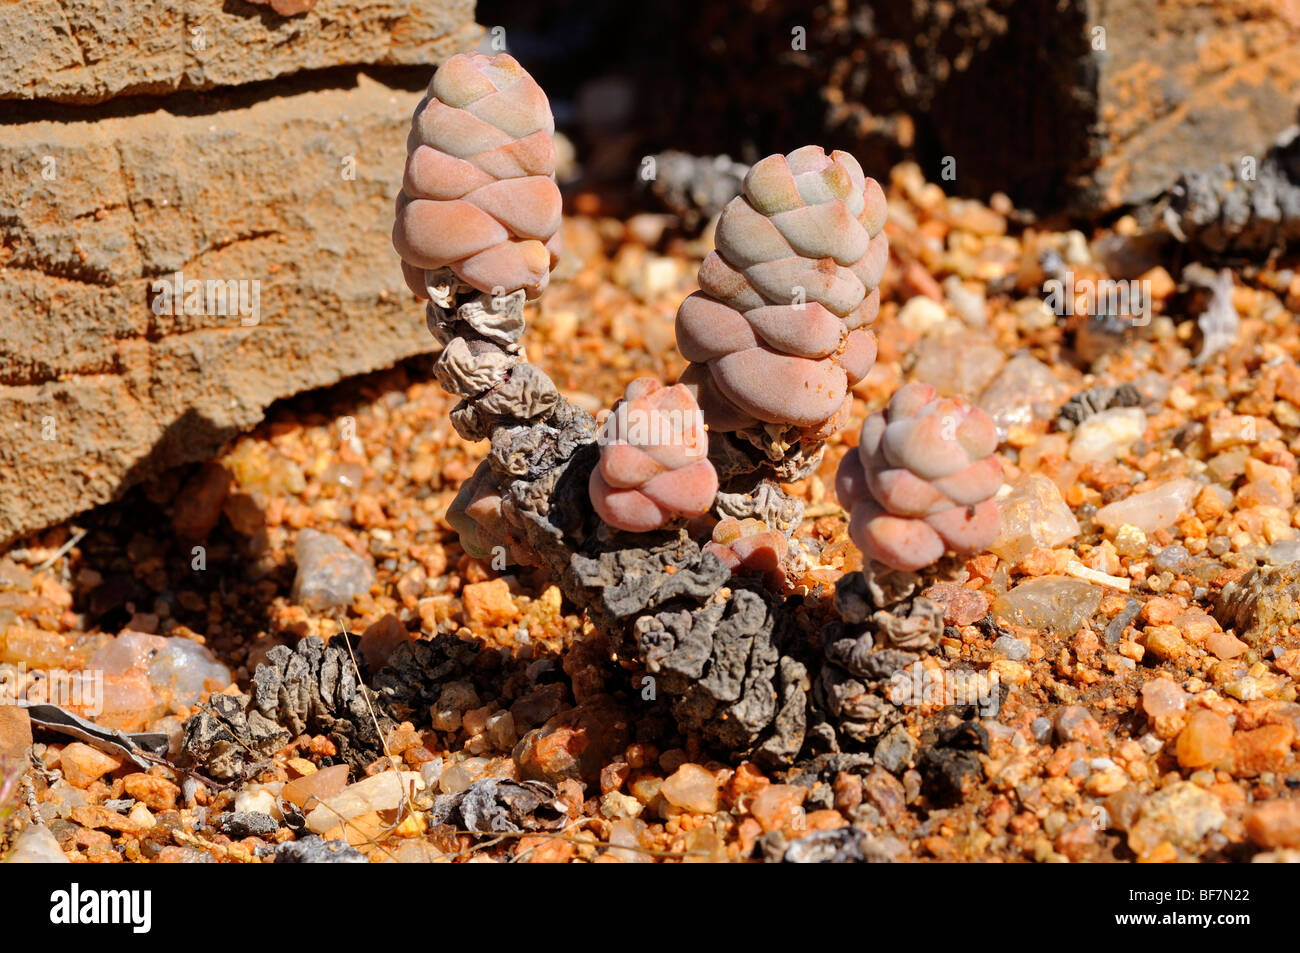 Crassula plegmatoides, Namaqualand, South Africa Stock Photo